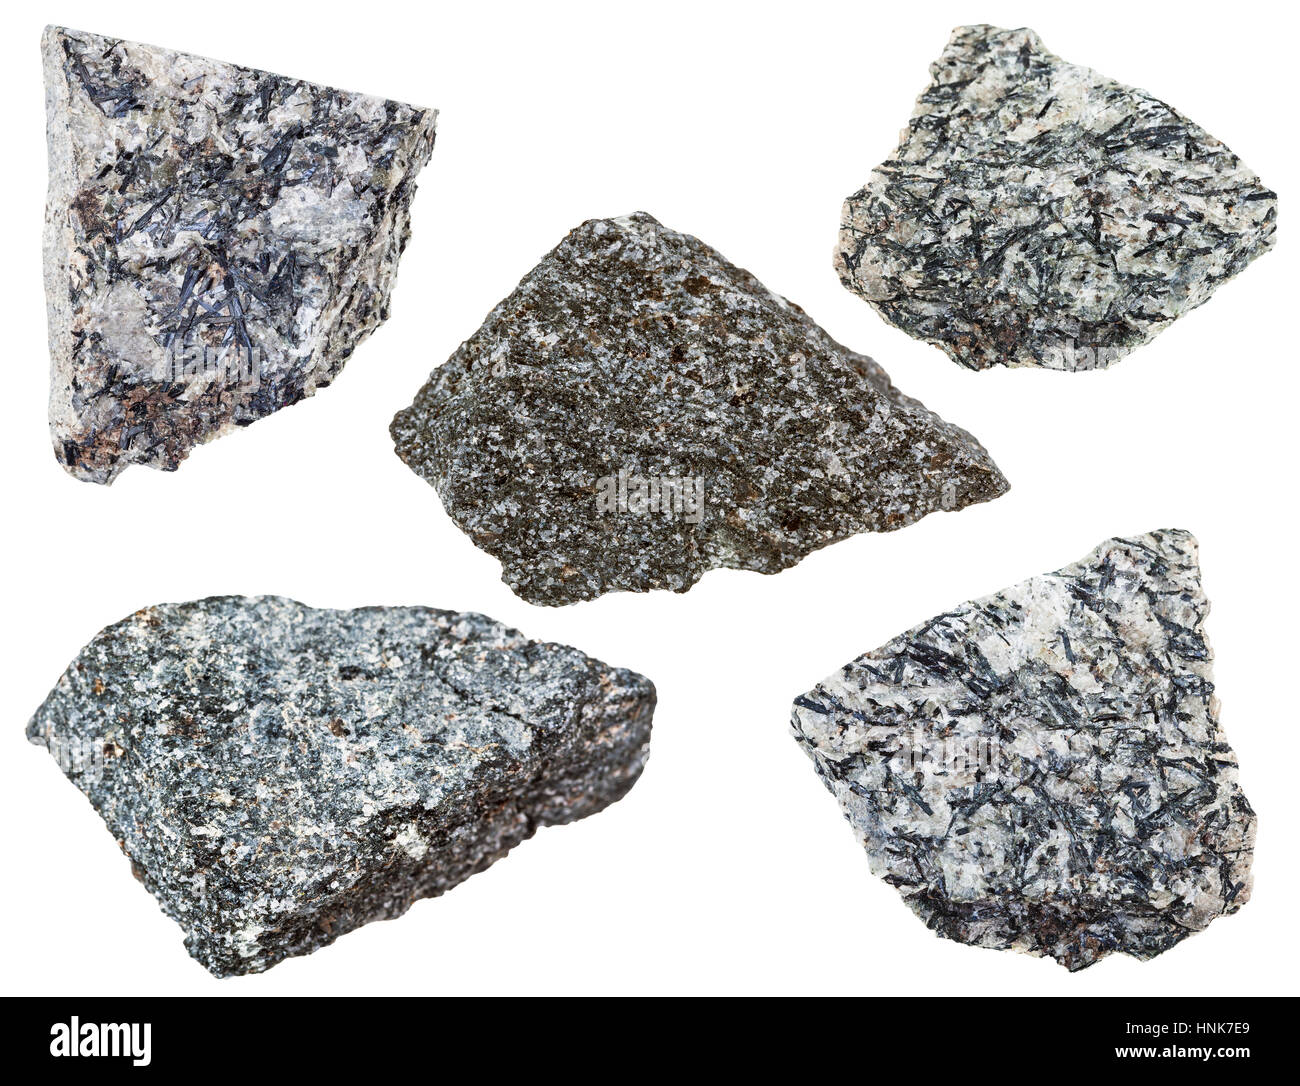 Sammlung von verschiedenen Nepheline Syenit mineralischen Steinen isoliert auf weißem Hintergrund Stockfoto